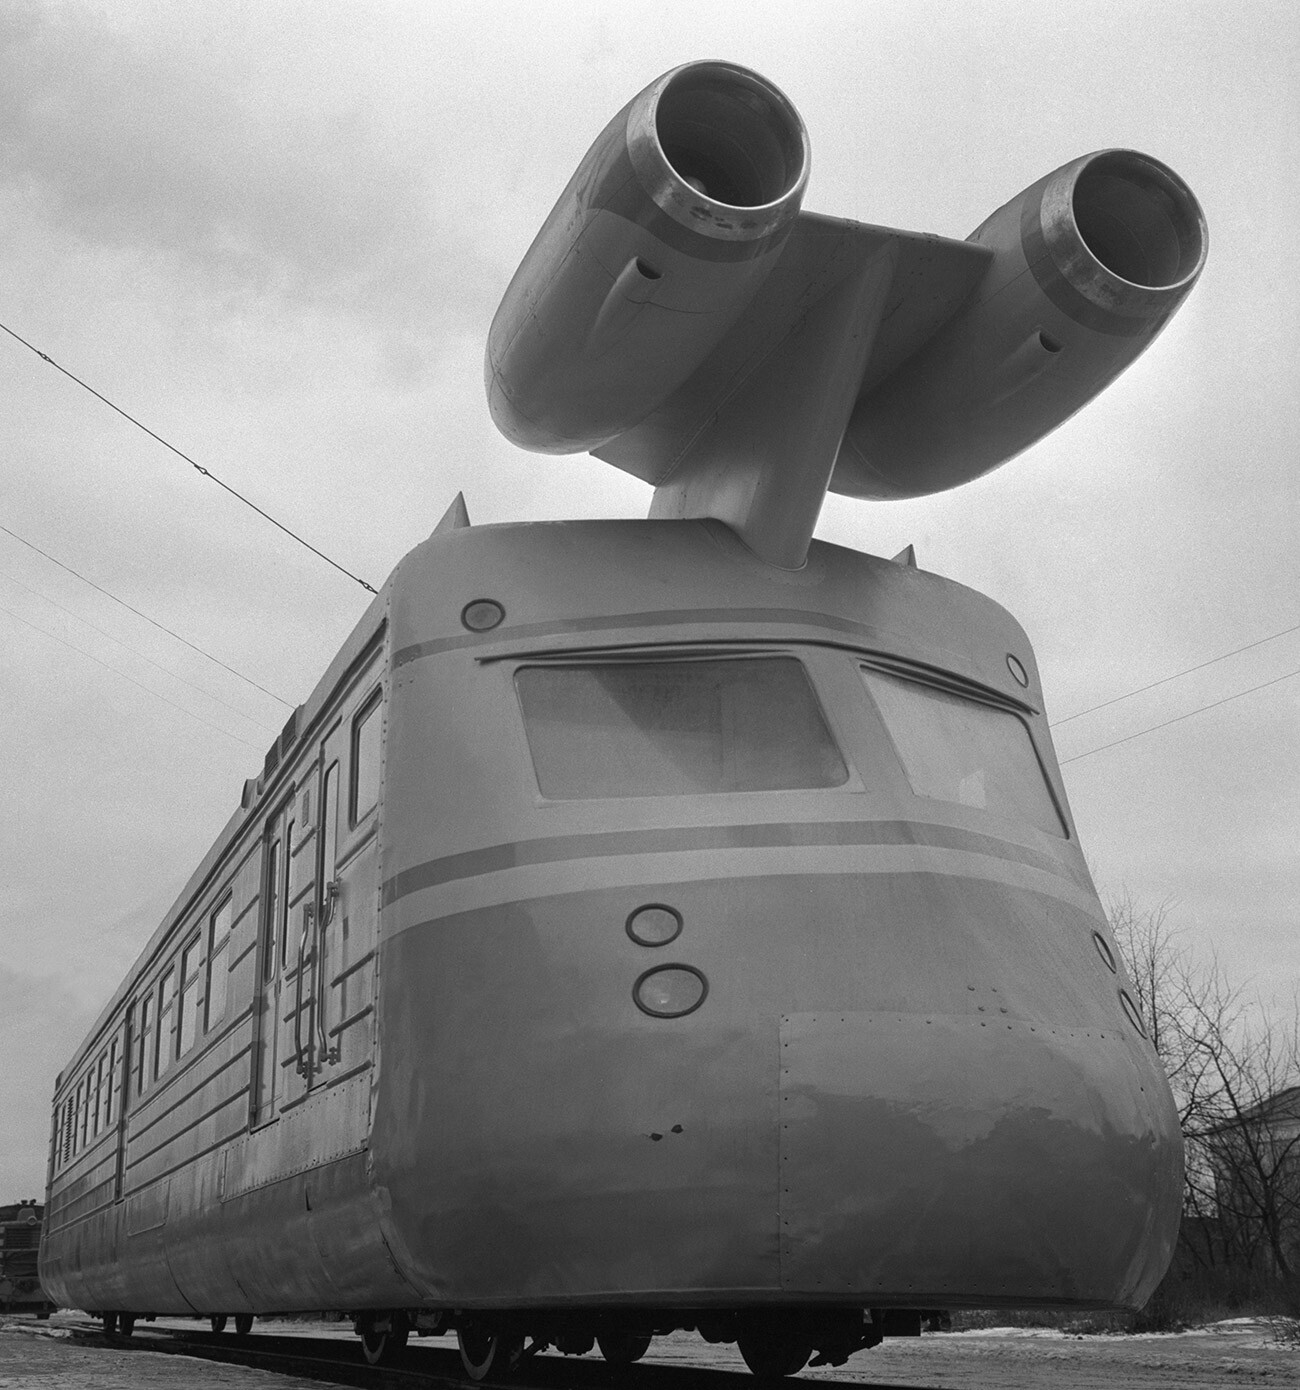 Kalinininska regija. 29. november 1970: Visokohitrostni vagon na reaktivni pogon, zgrajen na osnovi glavnega vagona električnega vlaka ER-22, med poskusno vožnjo v Kalininski tovarni za izdelavo vagonov.